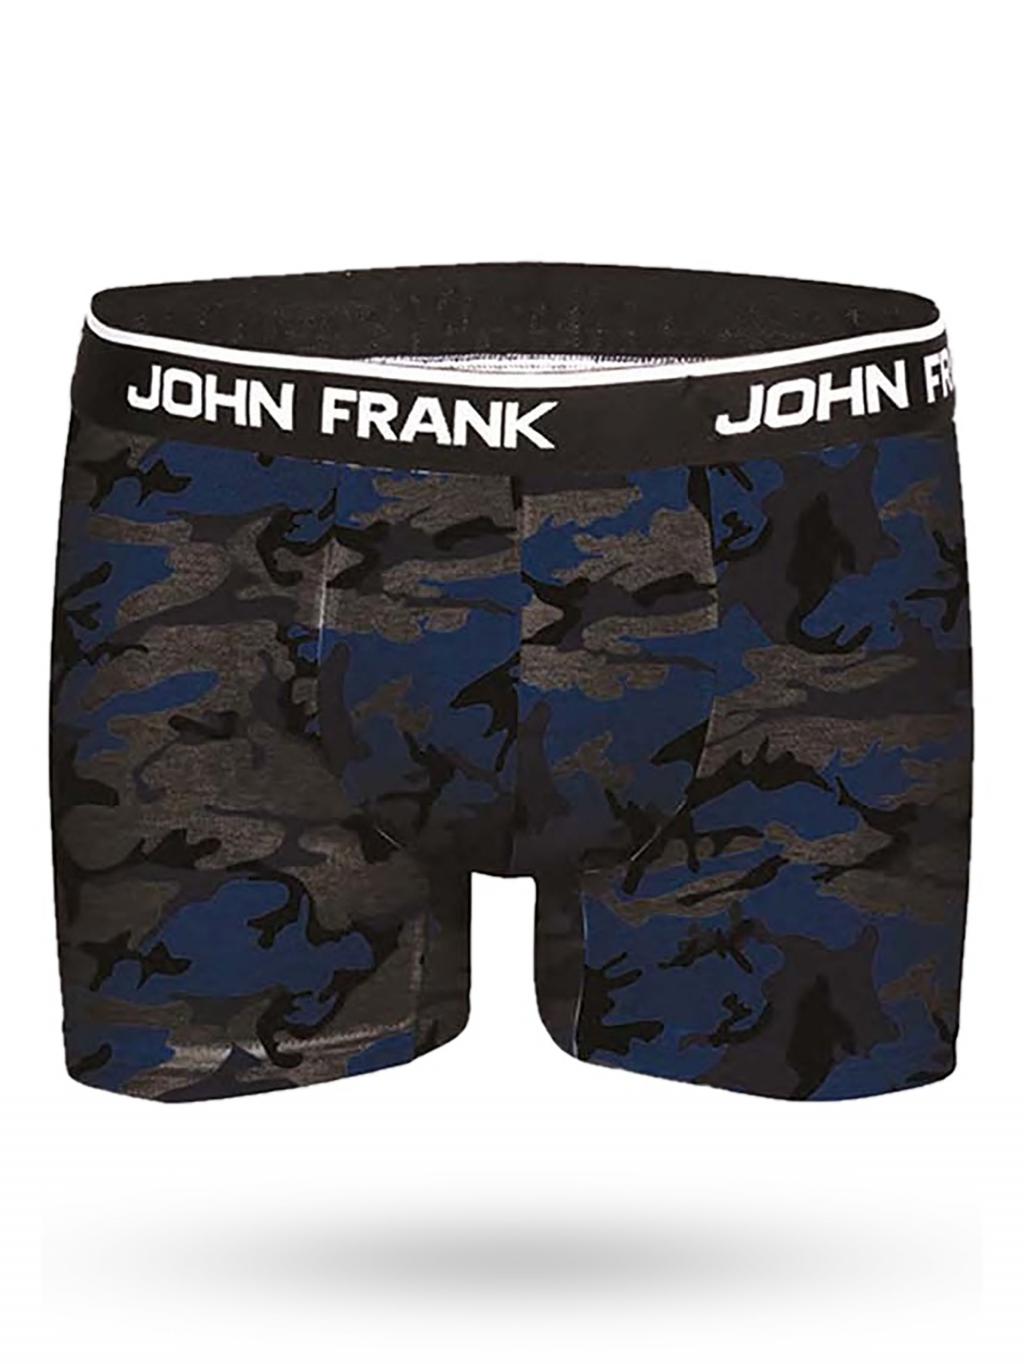 JFBD257 - pánské boxerky John Frank